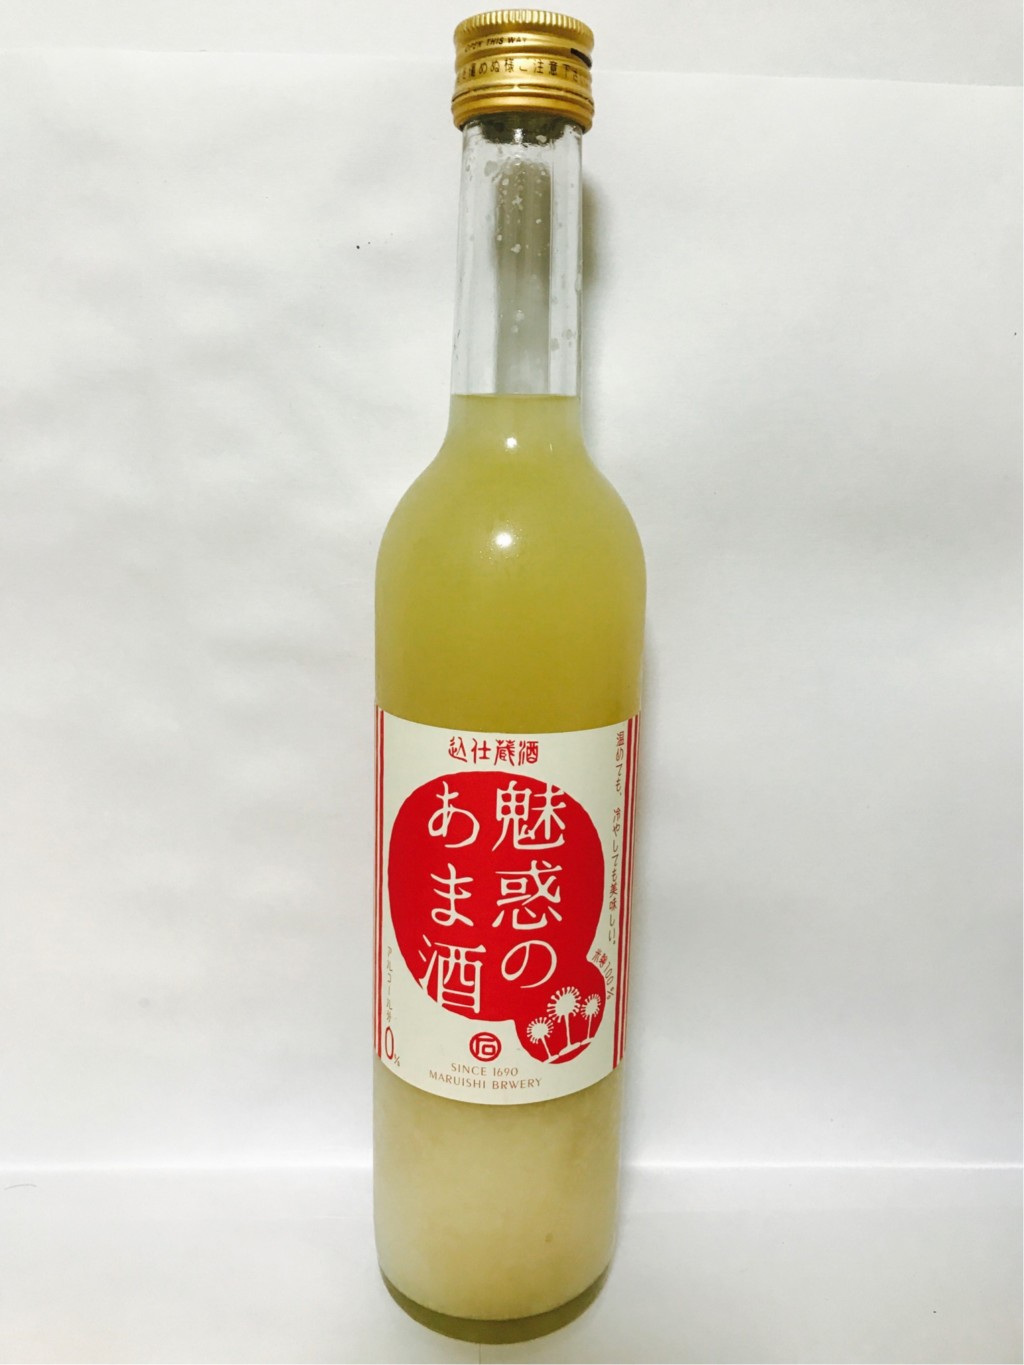 丸石醸造の米麹甘酒『魅惑のあま酒』